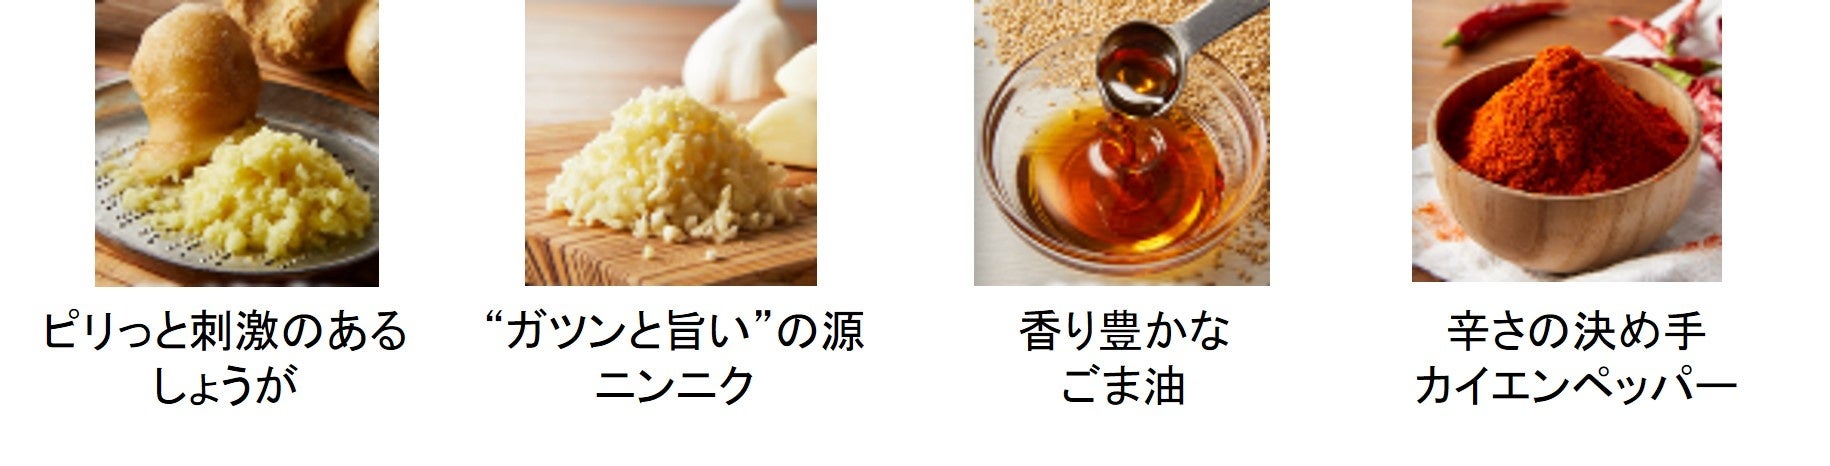 お客さまの熱い声にお応えし、唯一無二のあの味が再登場 丸亀製麺と株式会社TOKIOの自信作3種類が今だけ勢揃...